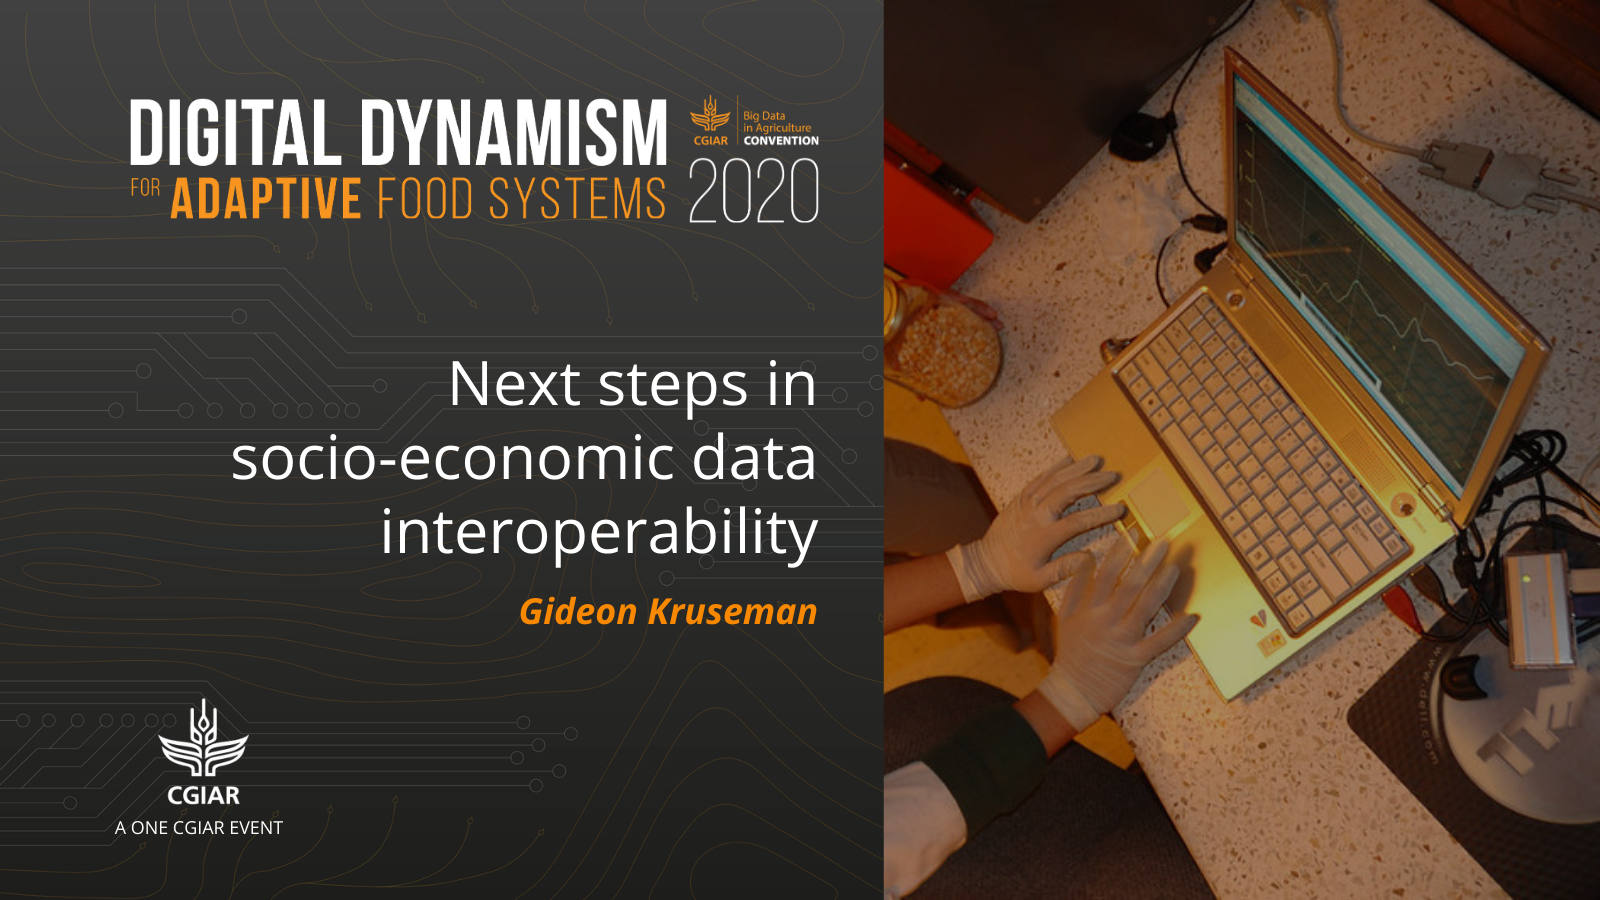 2020 Convention session - Next steps in socio-economic data interoperability